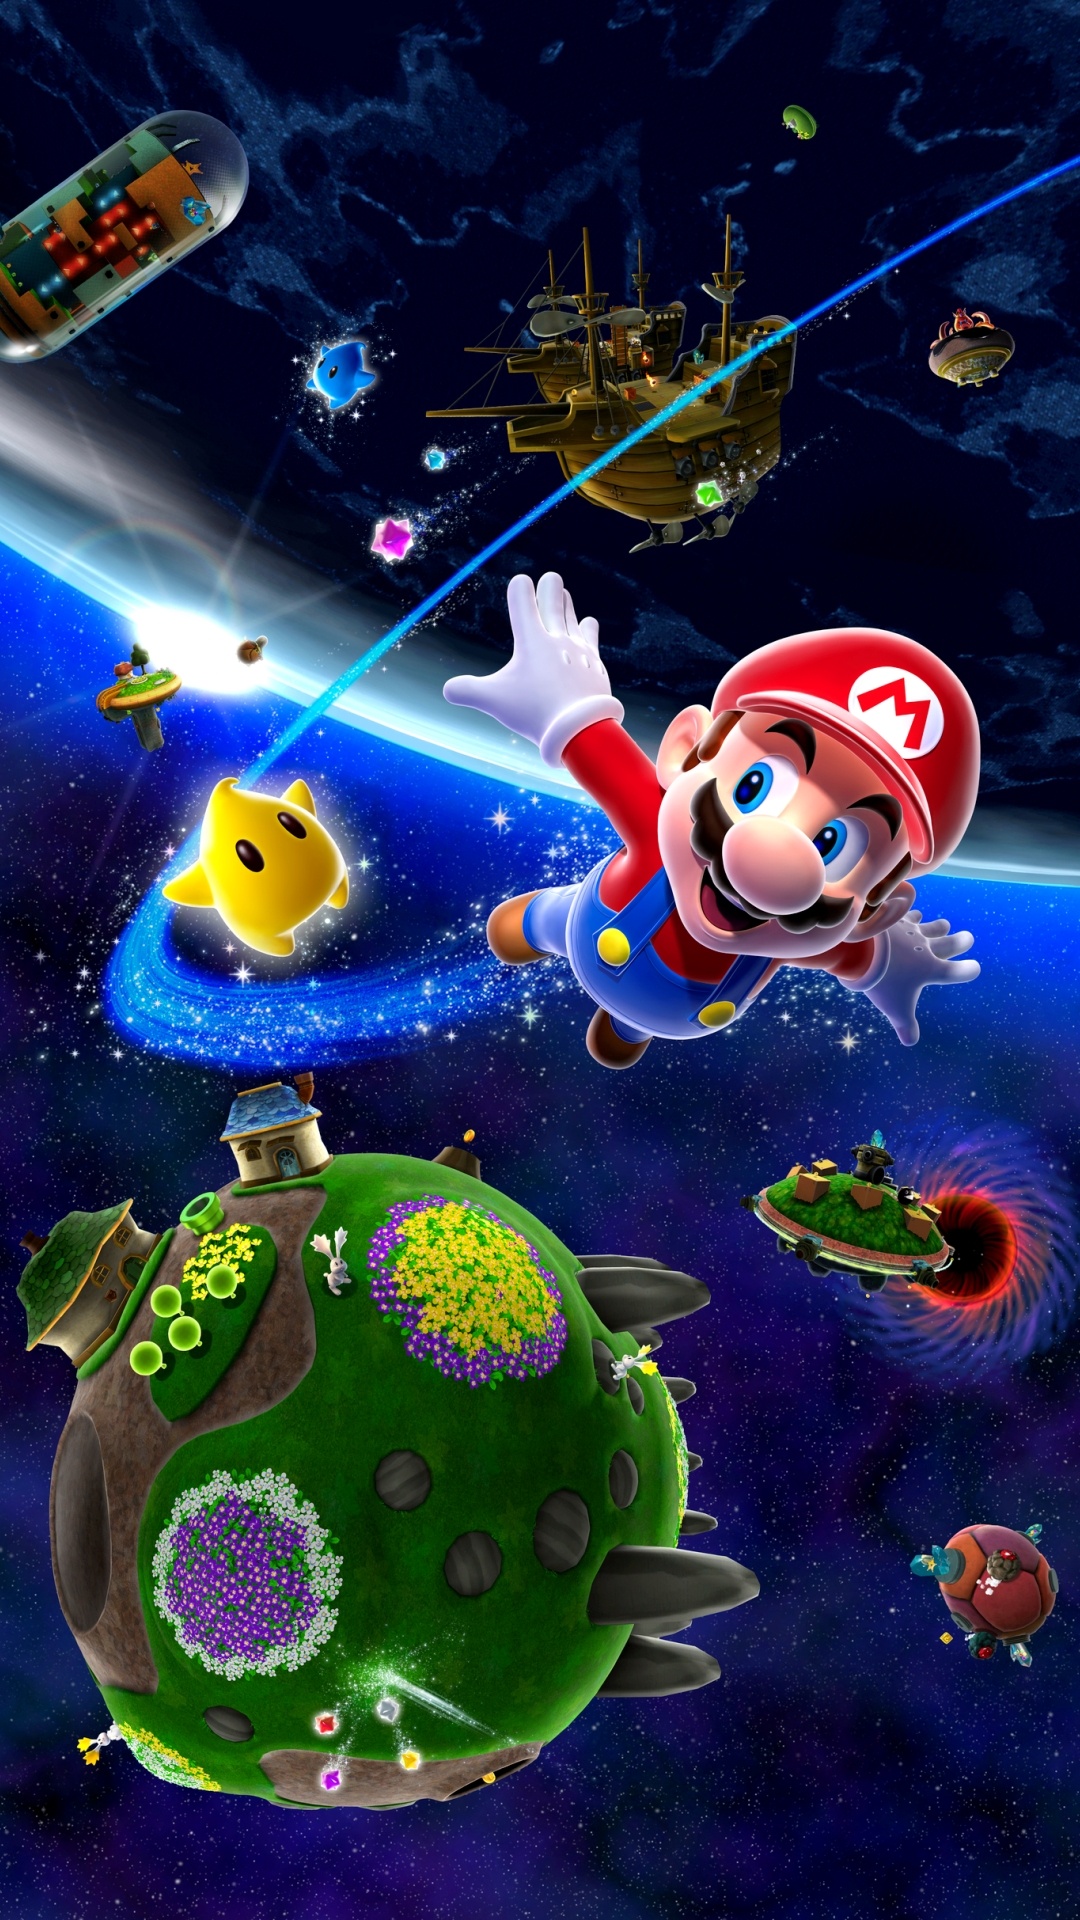 Super Mario Galaxy Wallpapers - 1080x1920 - 789559